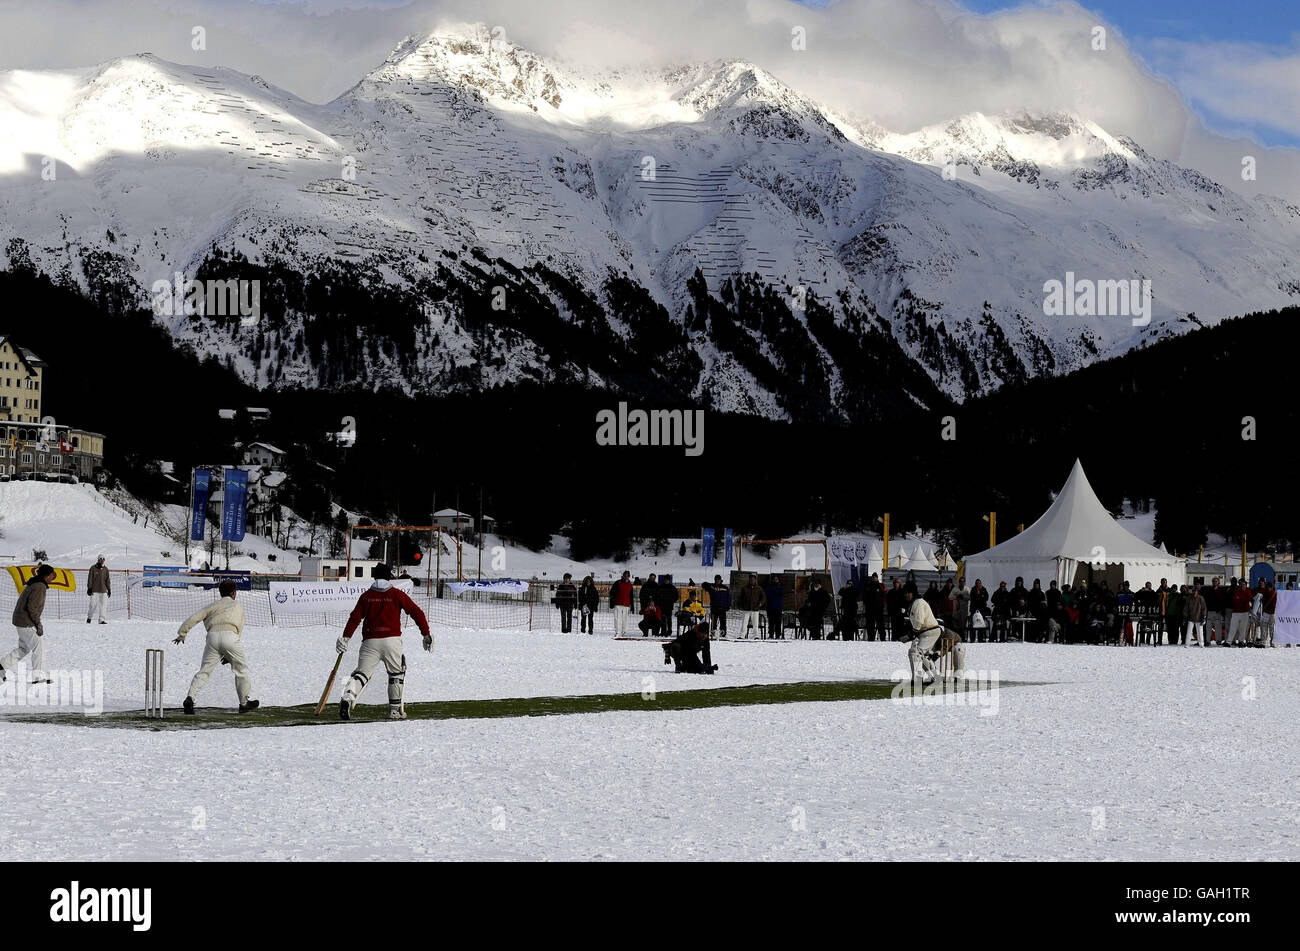 Les joueurs de cricket jouent sur un lac gelé lors du dernier tournoi de robin qui célèbre vingt ans de cricket sur glace, à St Moritz, en Suisse. Banque D'Images